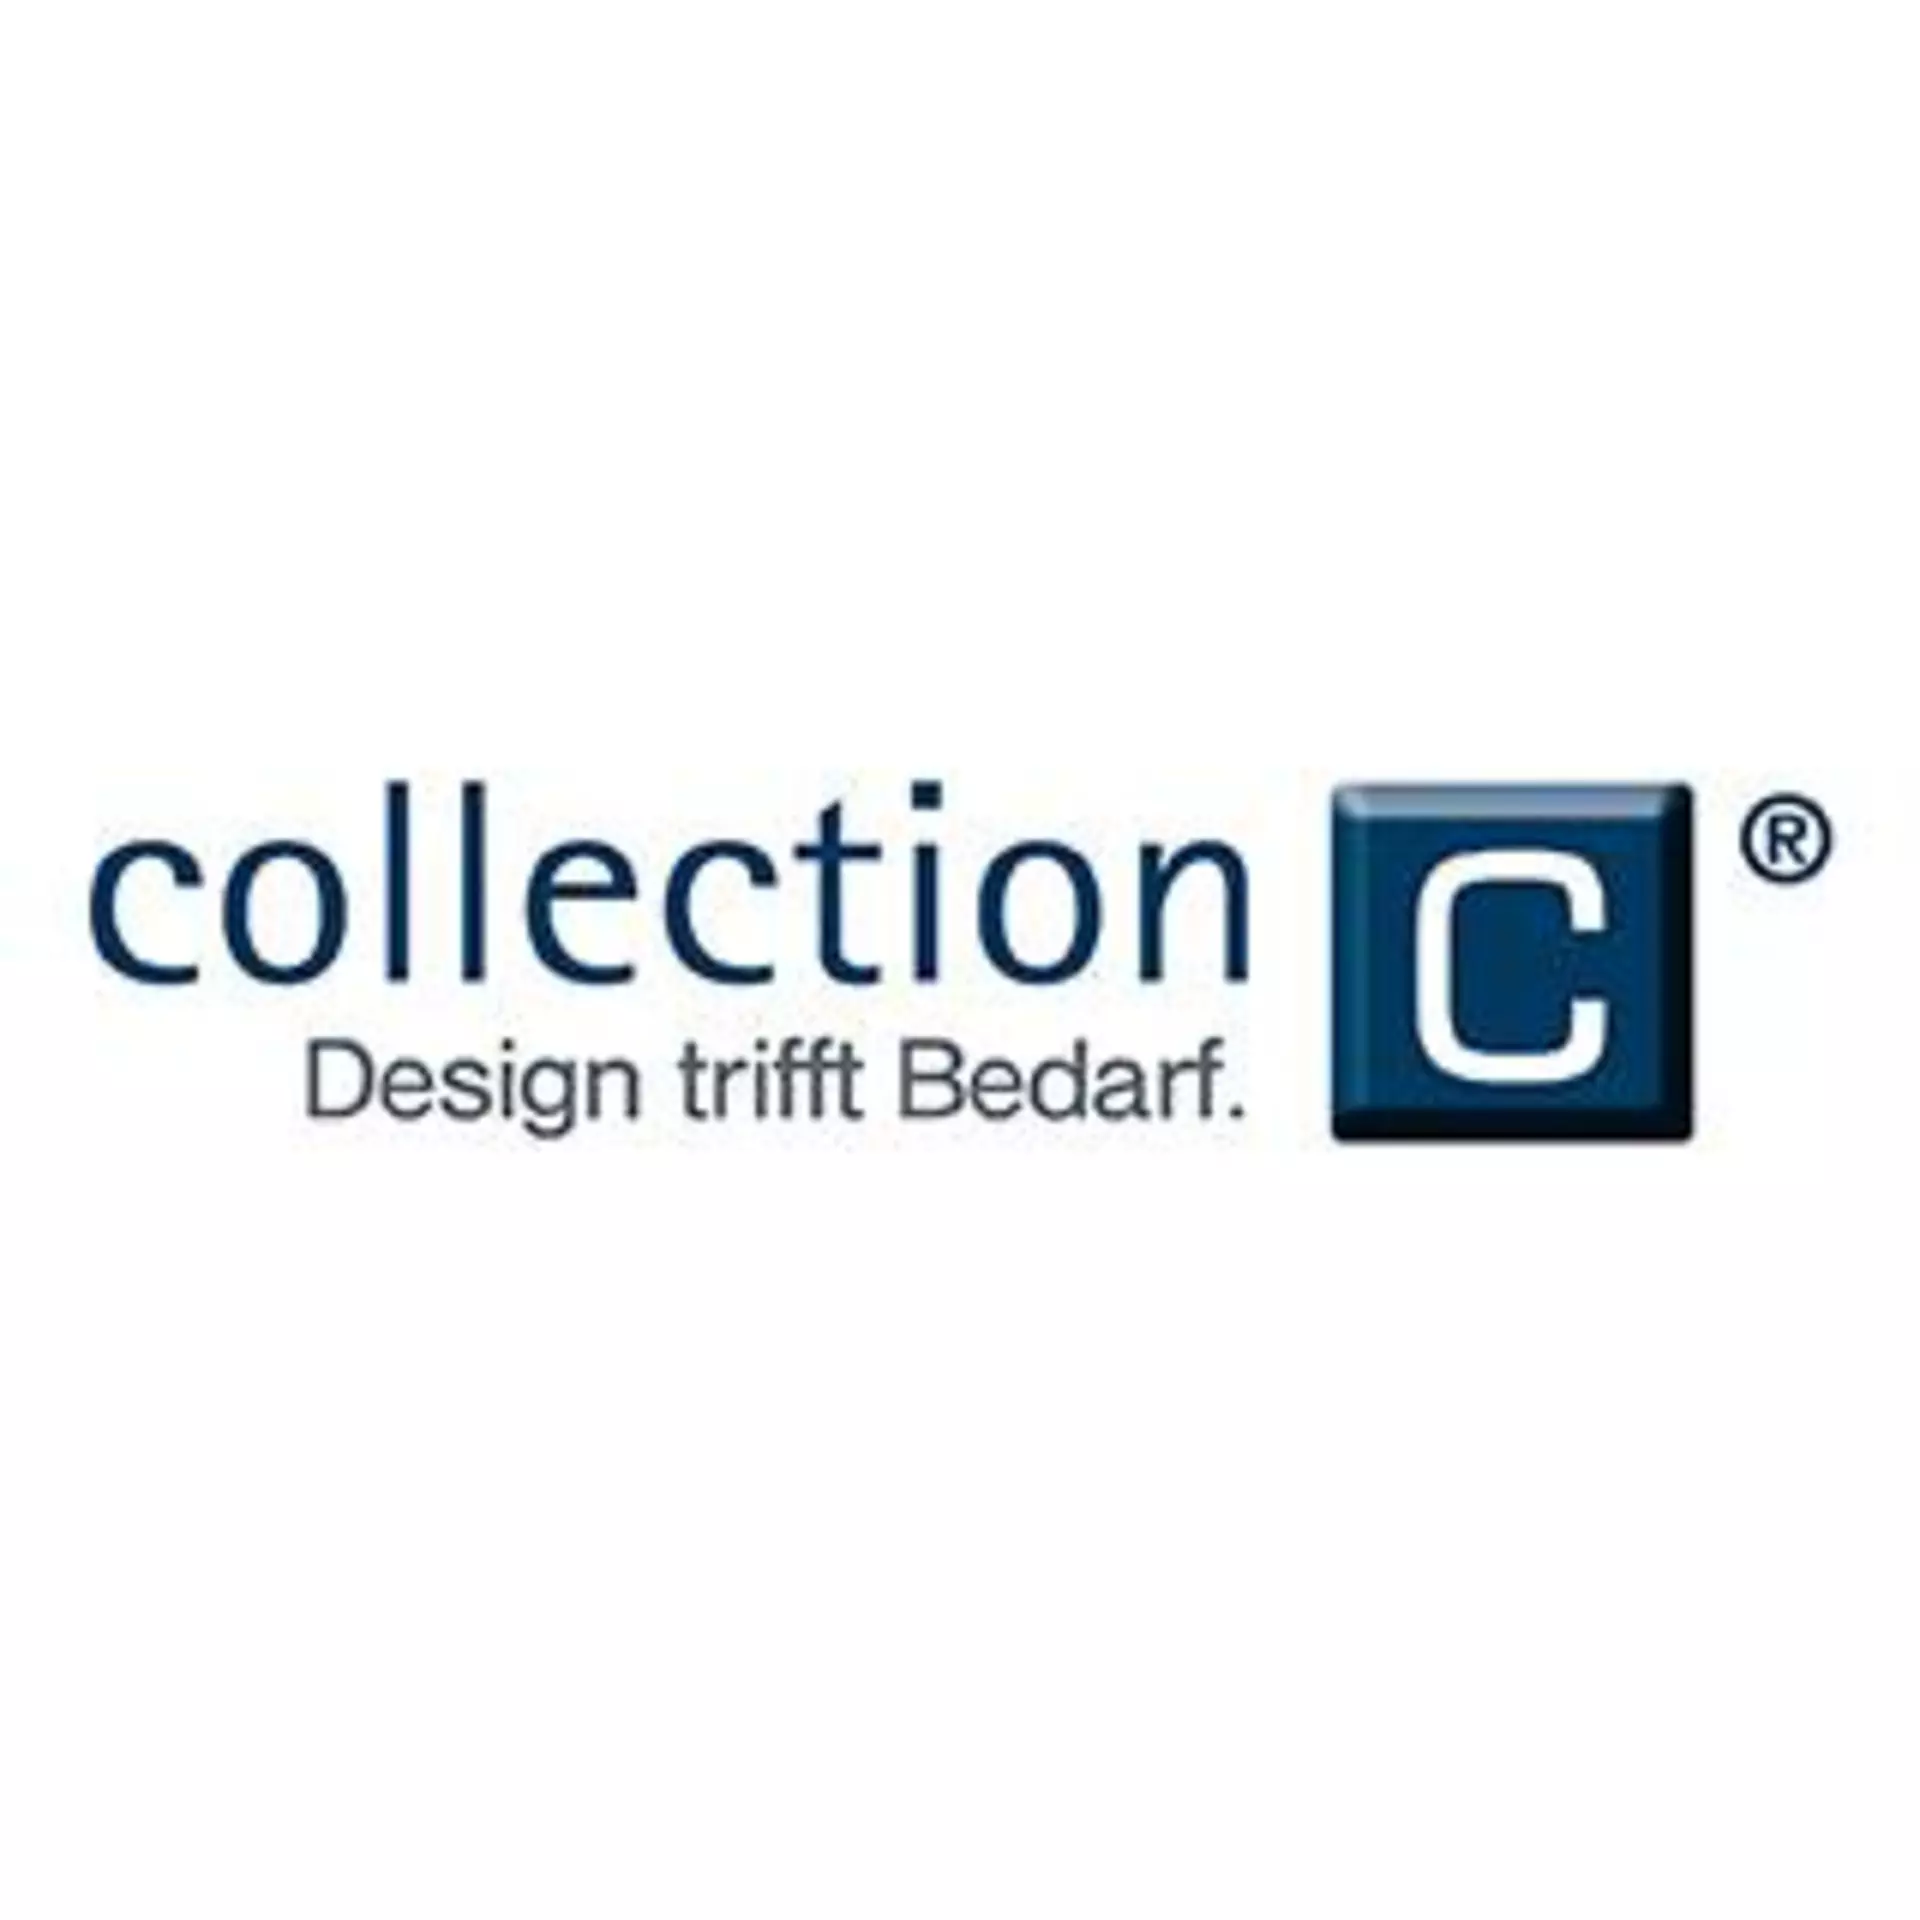 Logo "collection - Design trifft Bedarf"